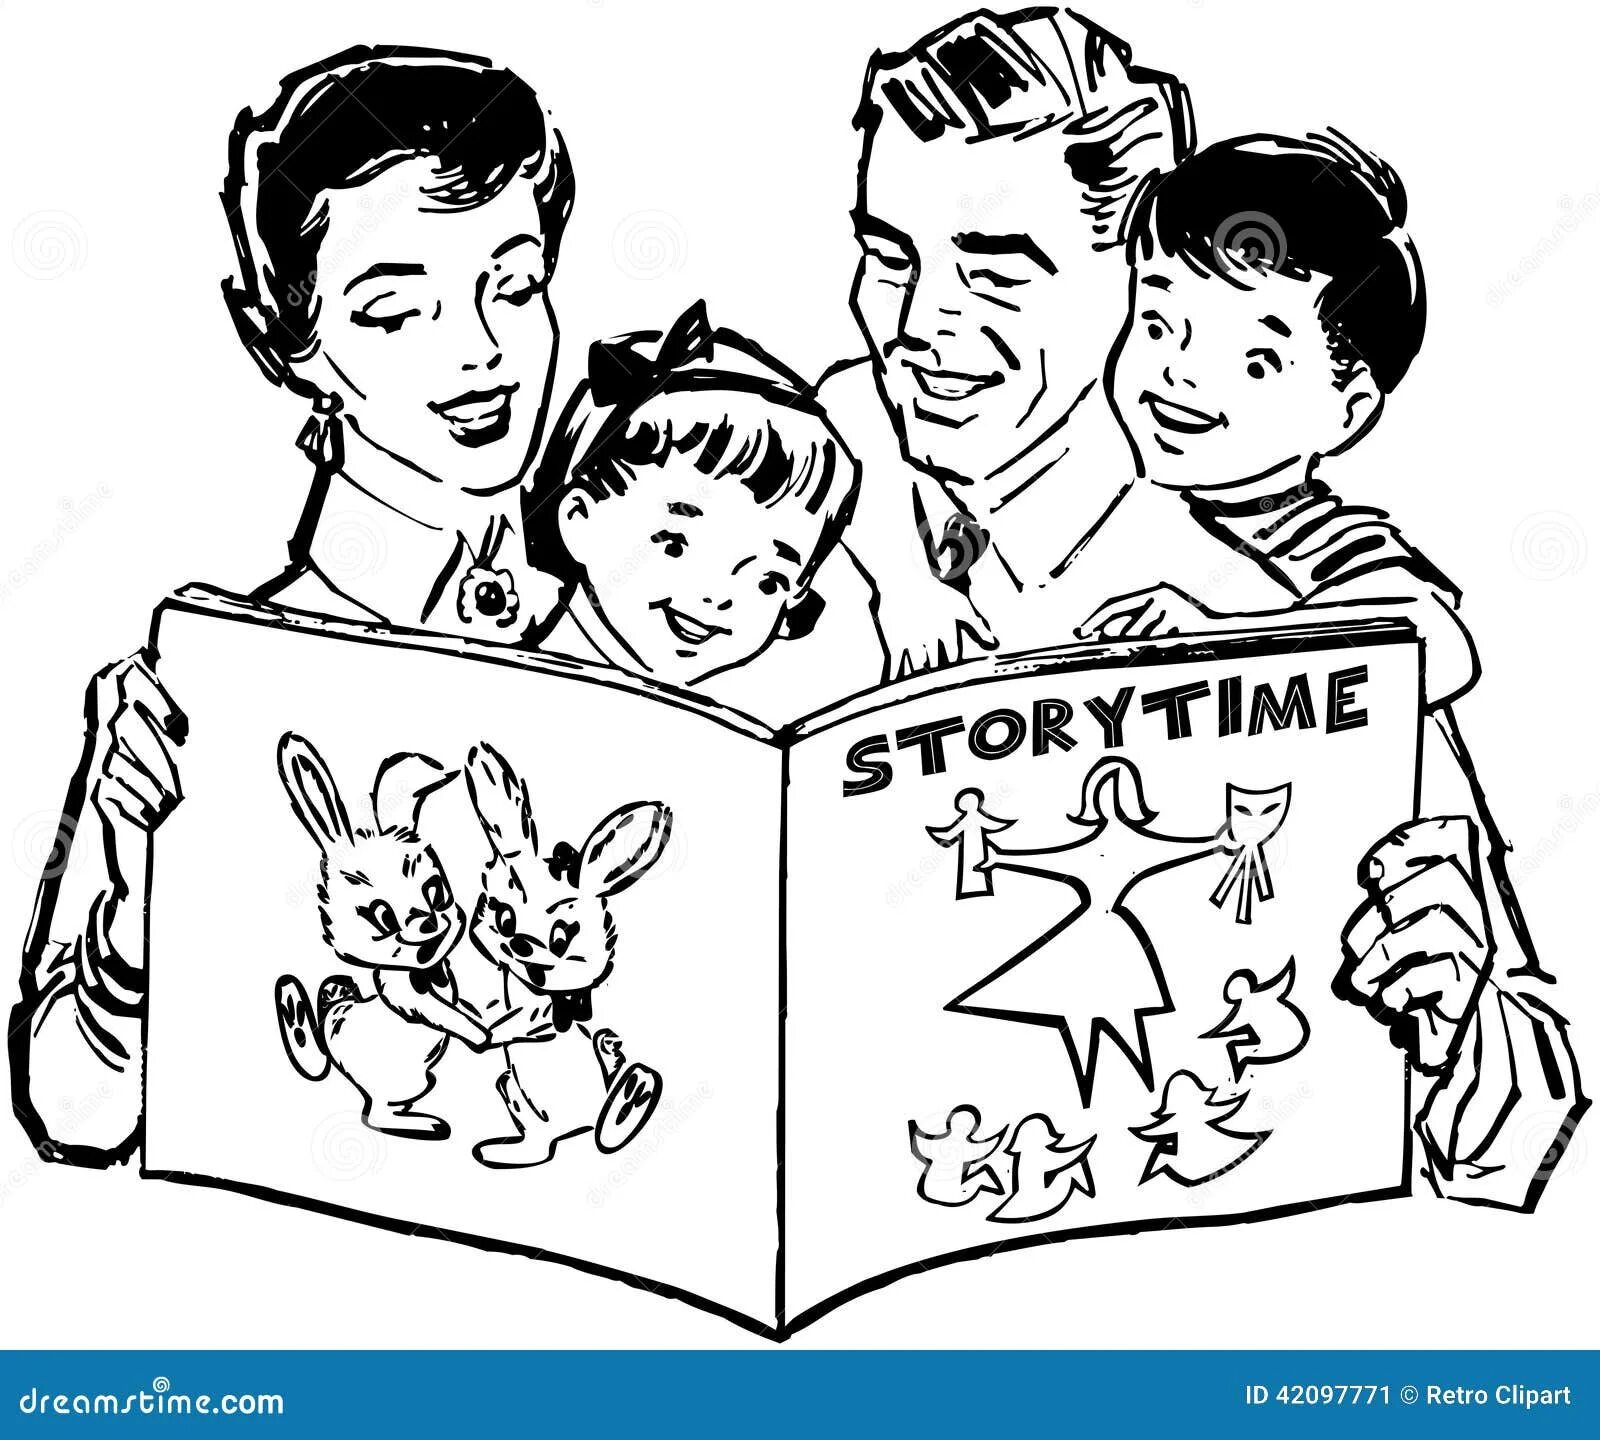 Читающая семья логотип. Раскраска семейное чтение. Семейное чтение картинки. Семейное чтение рисунок. Семья читает книгу рисунок.